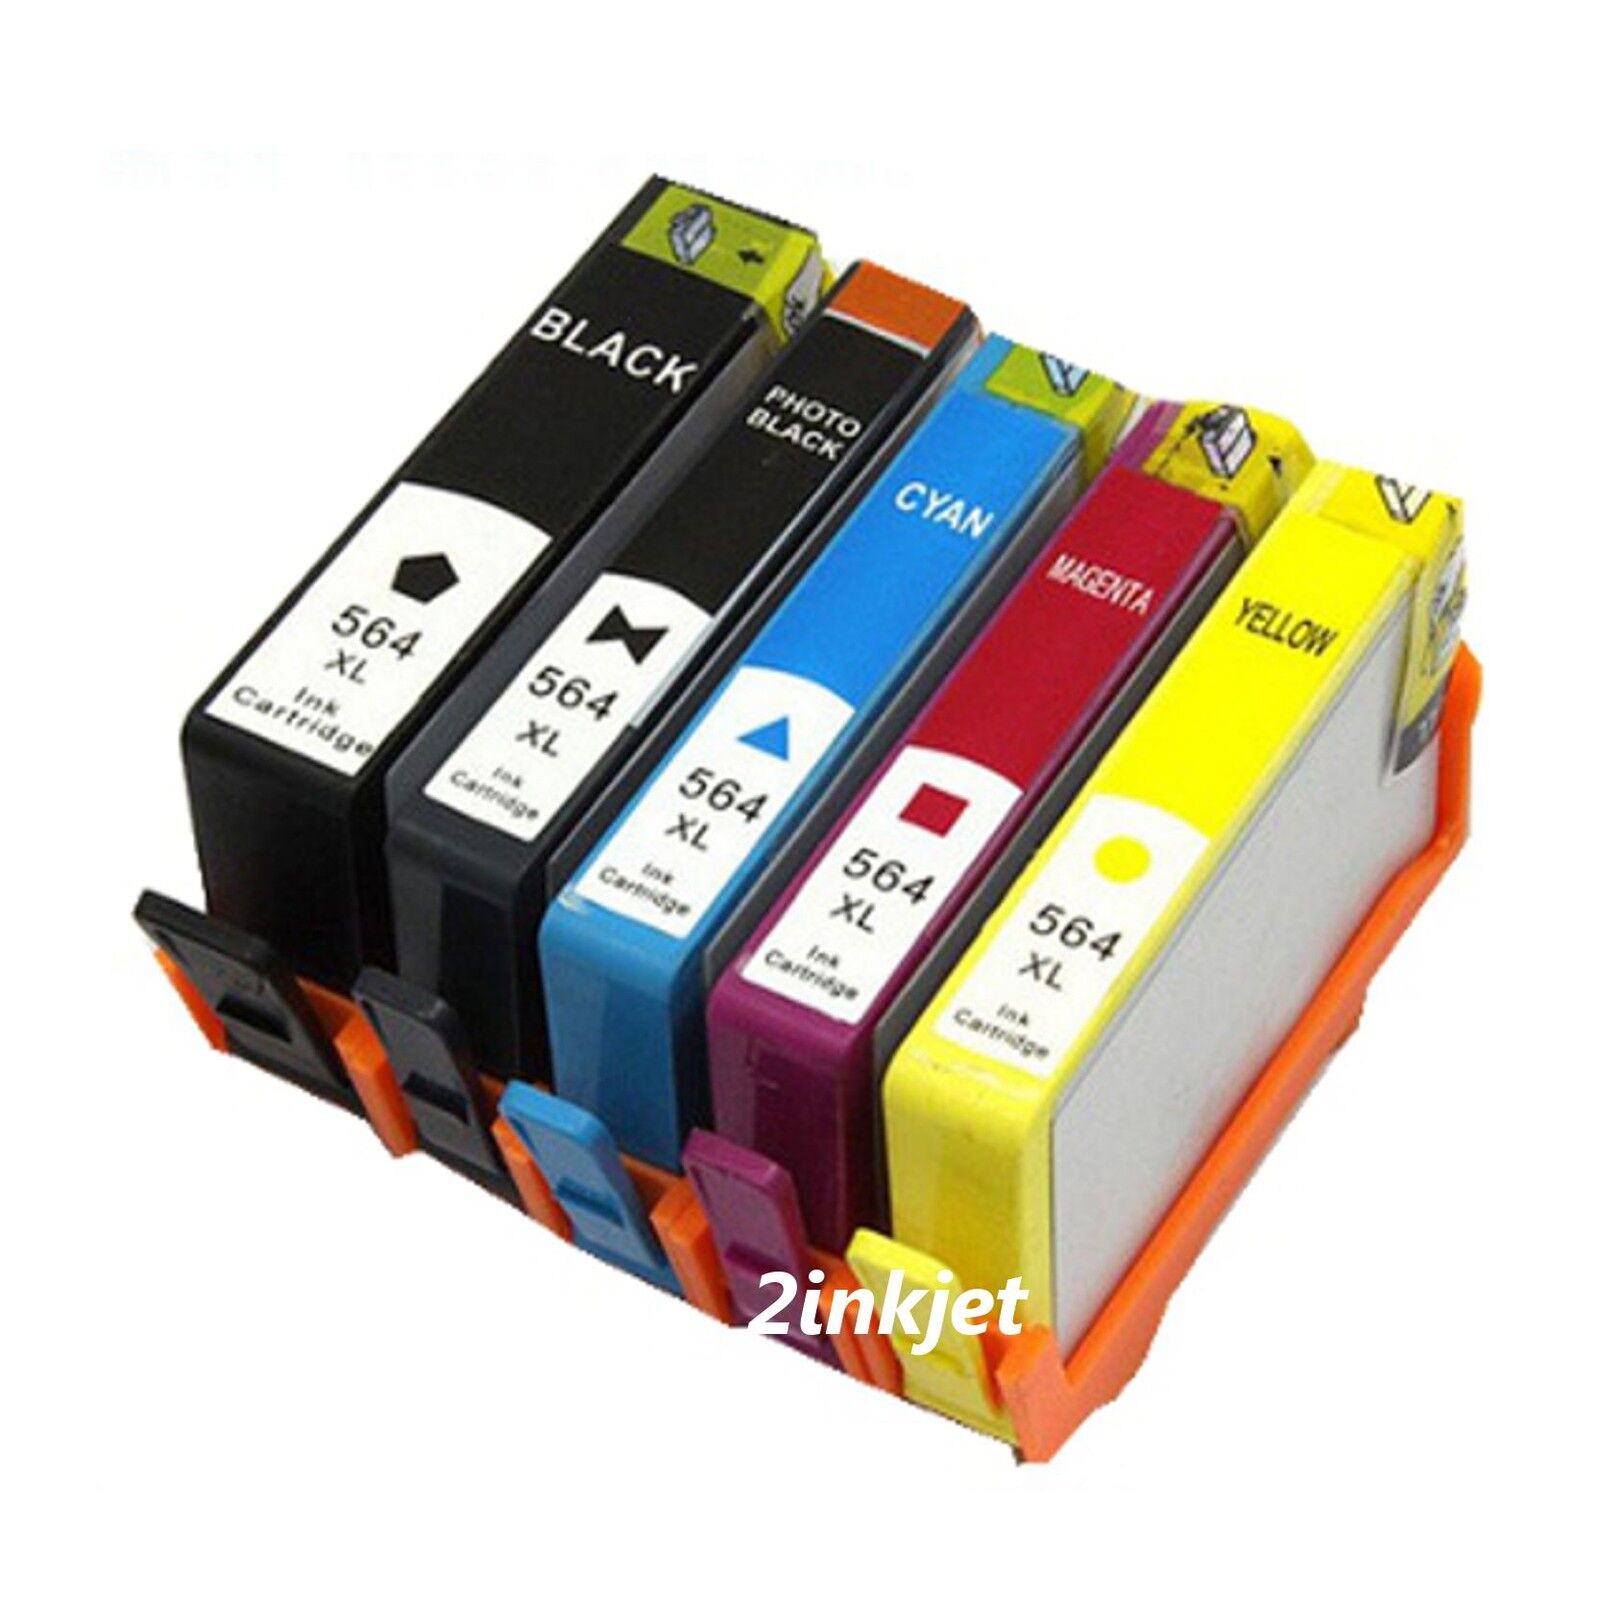 5Pk 564XL Compatible Ink Cartridge for HPhotosmar C6350 C6380 D5445 D5460 D7560